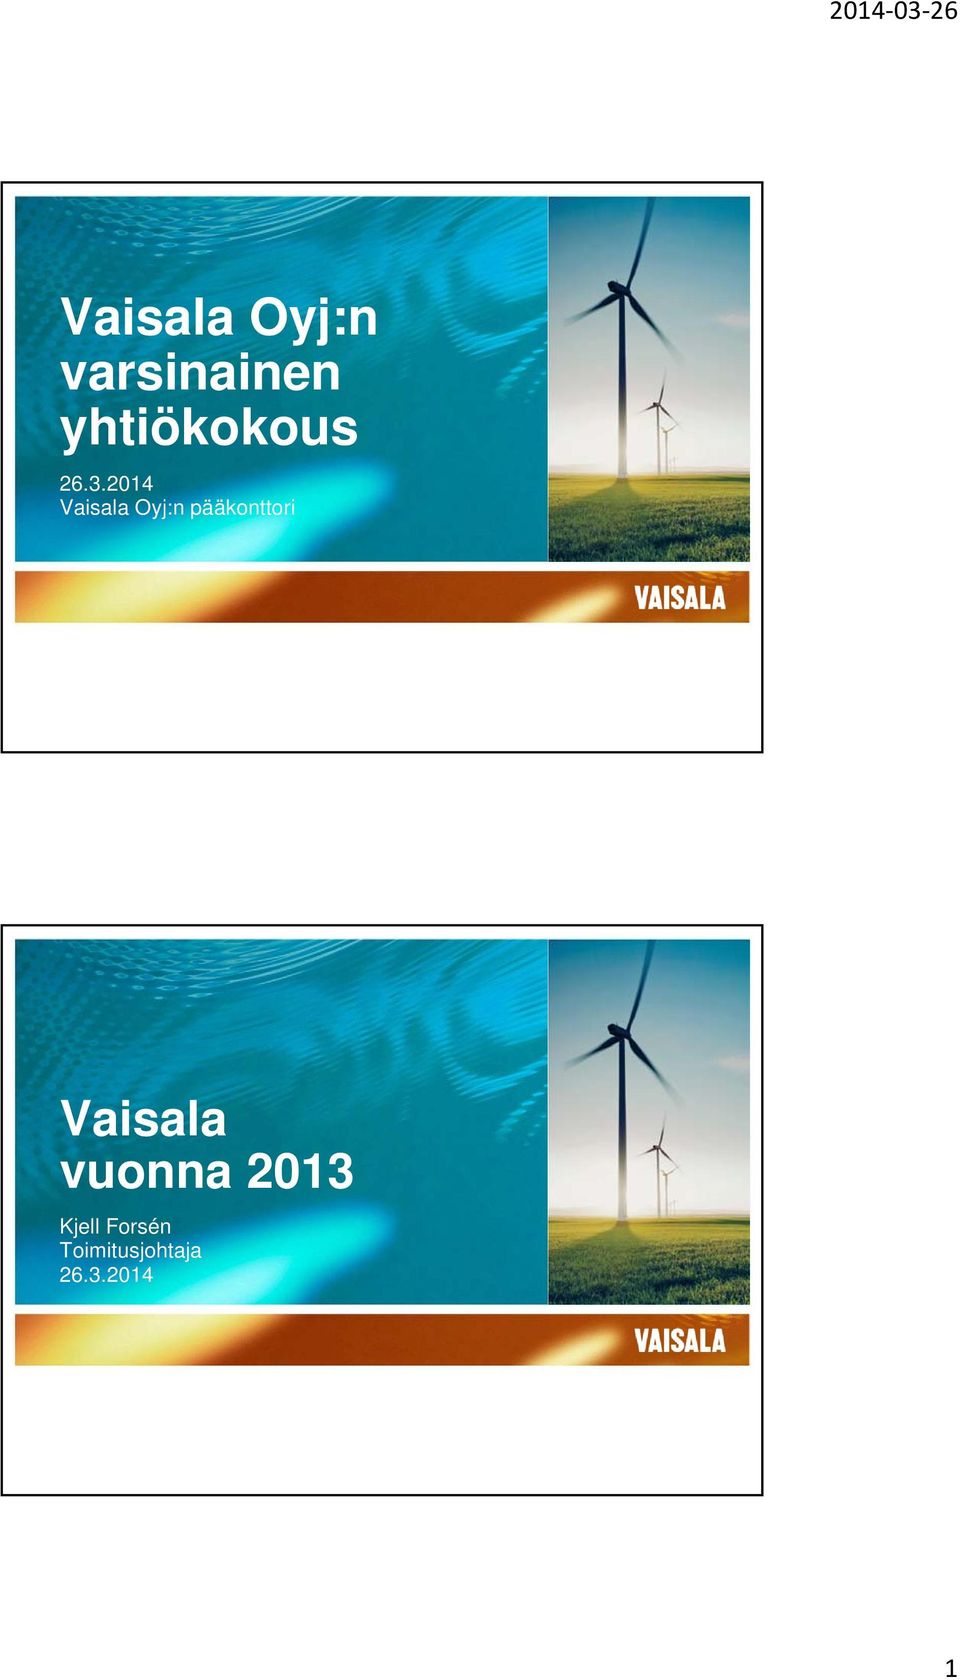 2014 Vaisala Oyj:n pääkonttori